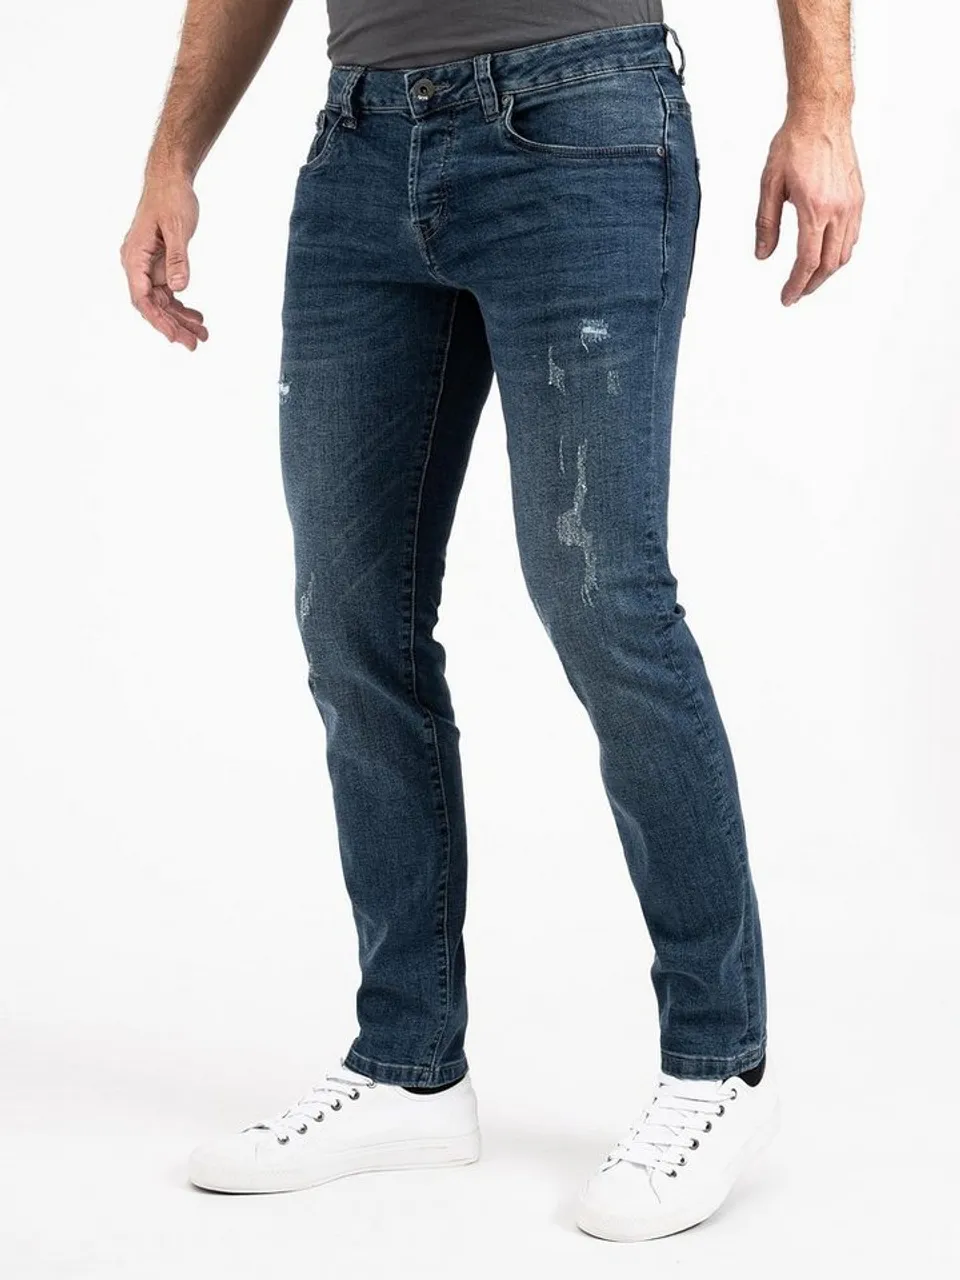 PEAK TIME Slim-fit-Jeans München Herren Jeans mit Stretch-Bund und Destroyed-Optik